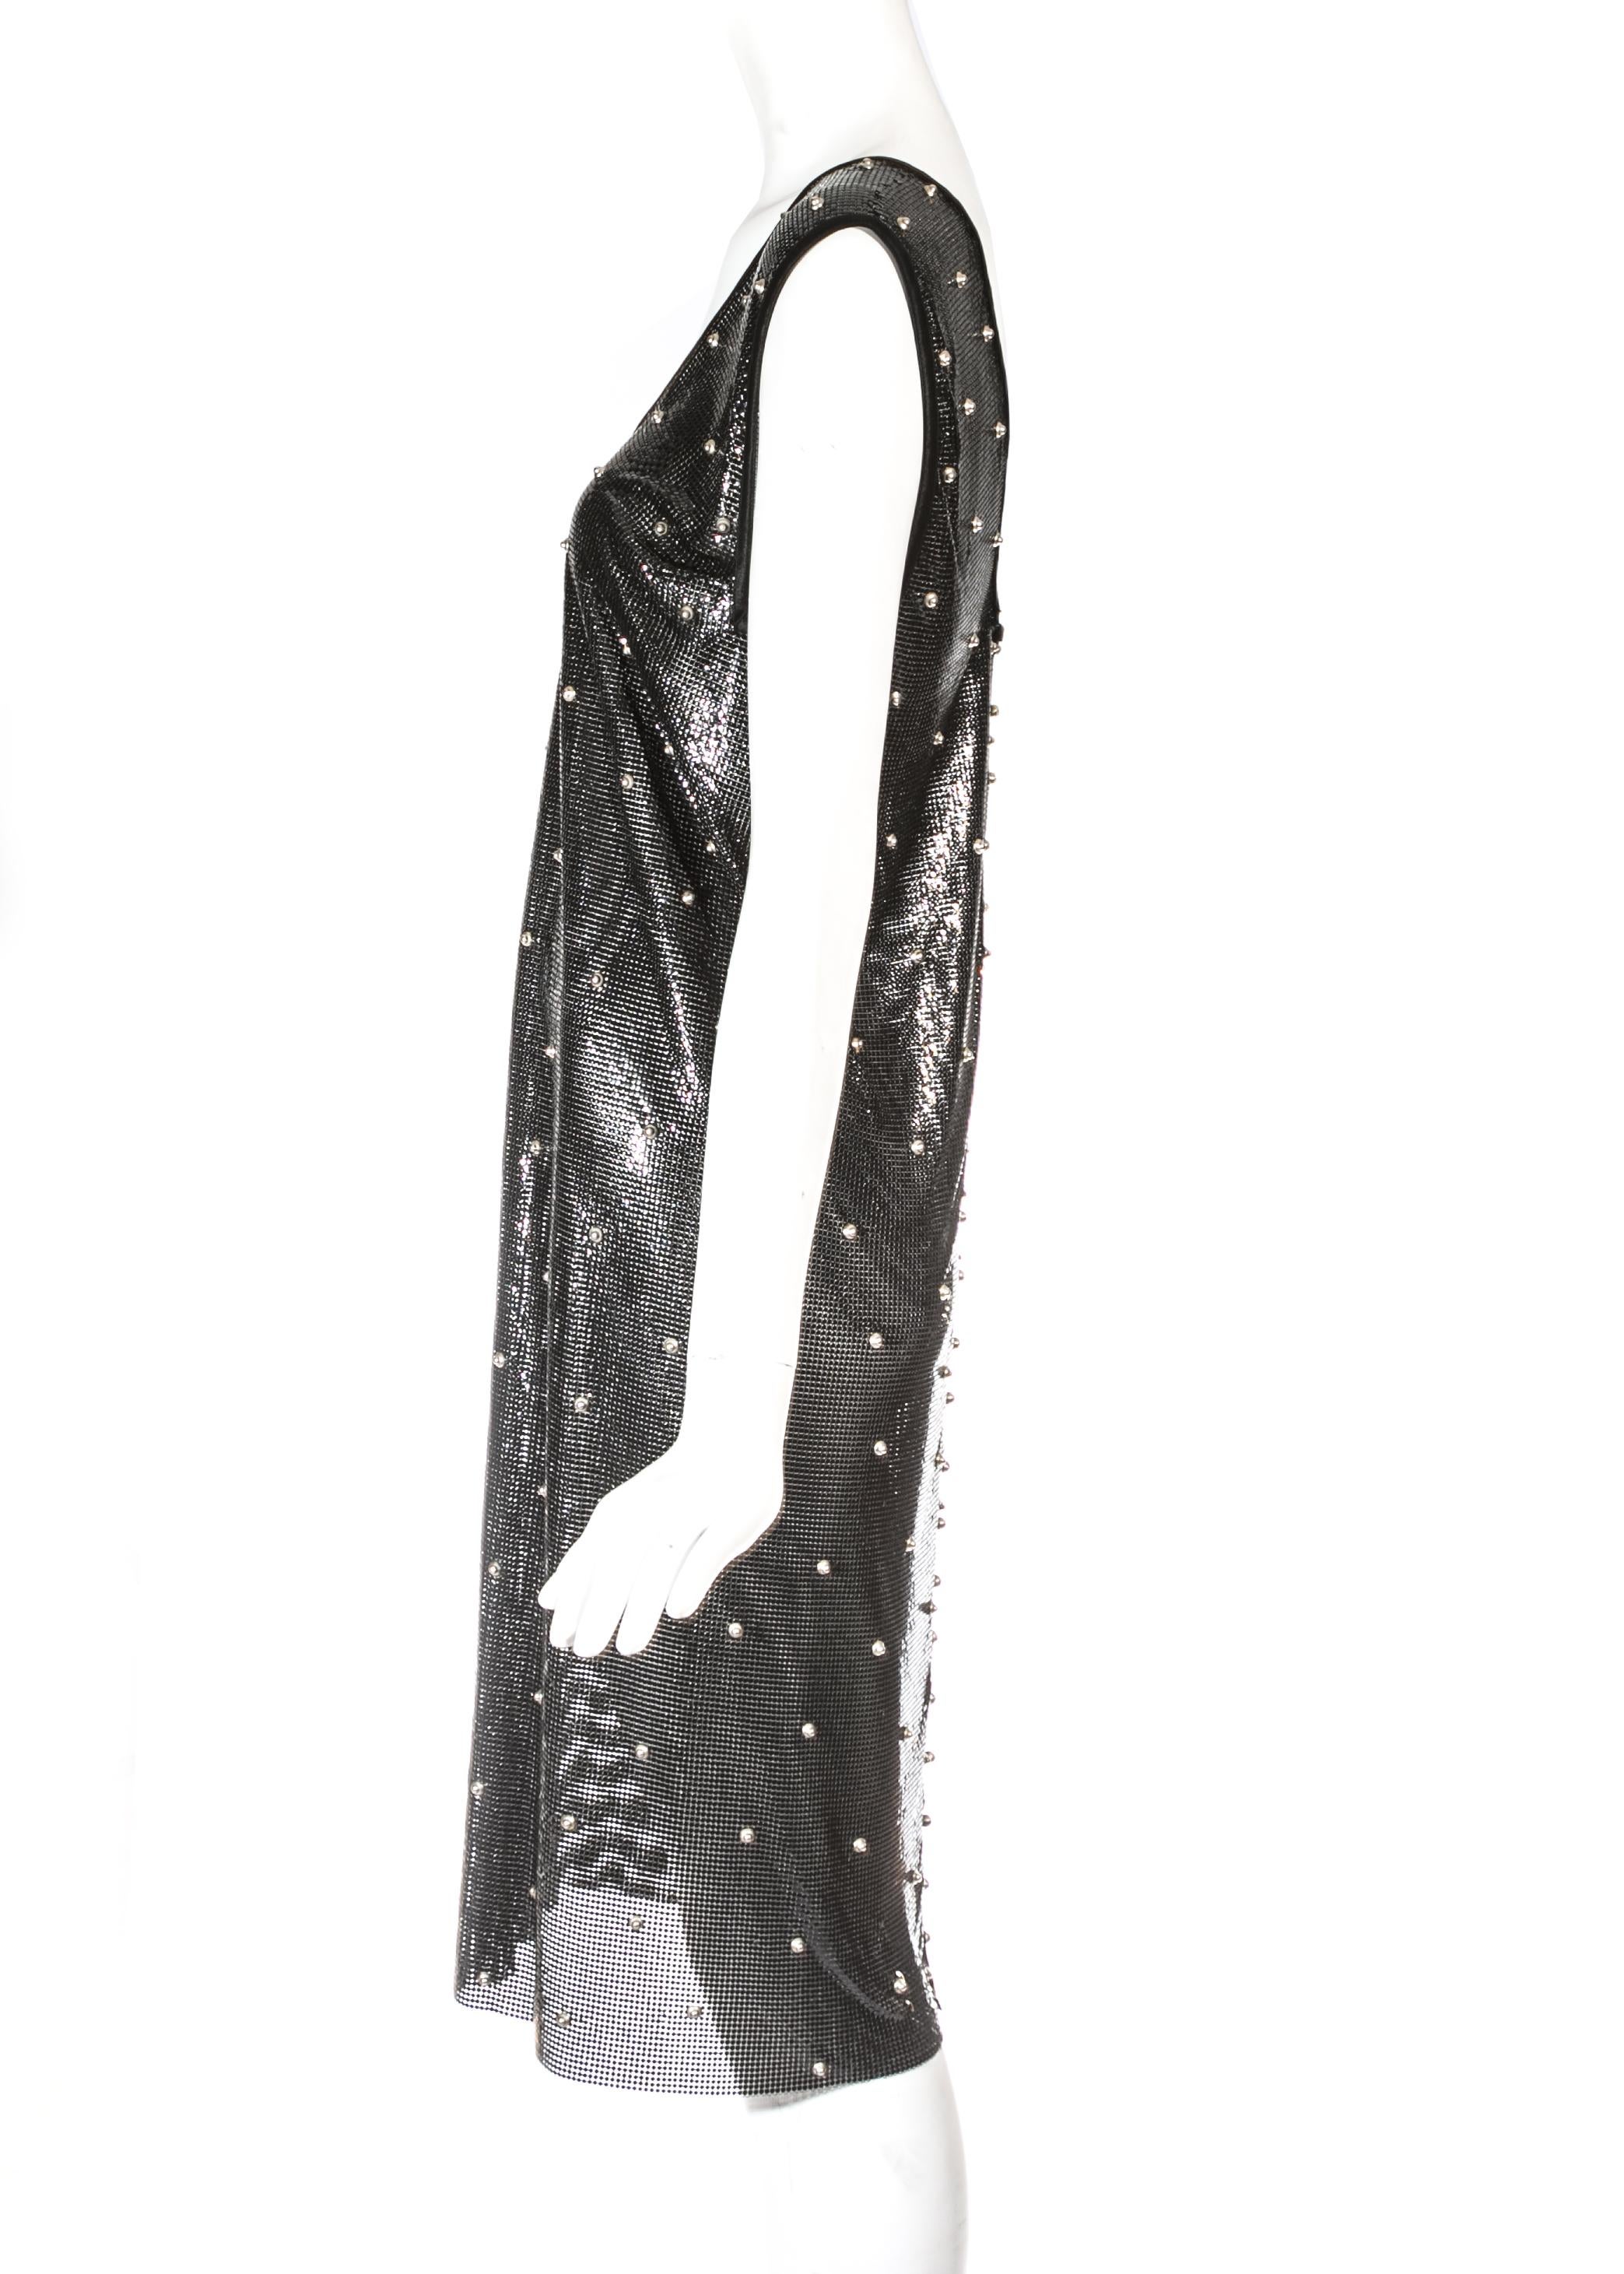 Gianni Versace Robe en maille métallique noire cloutée et maille cotte de mailles, A/H 1983 Pour femmes en vente